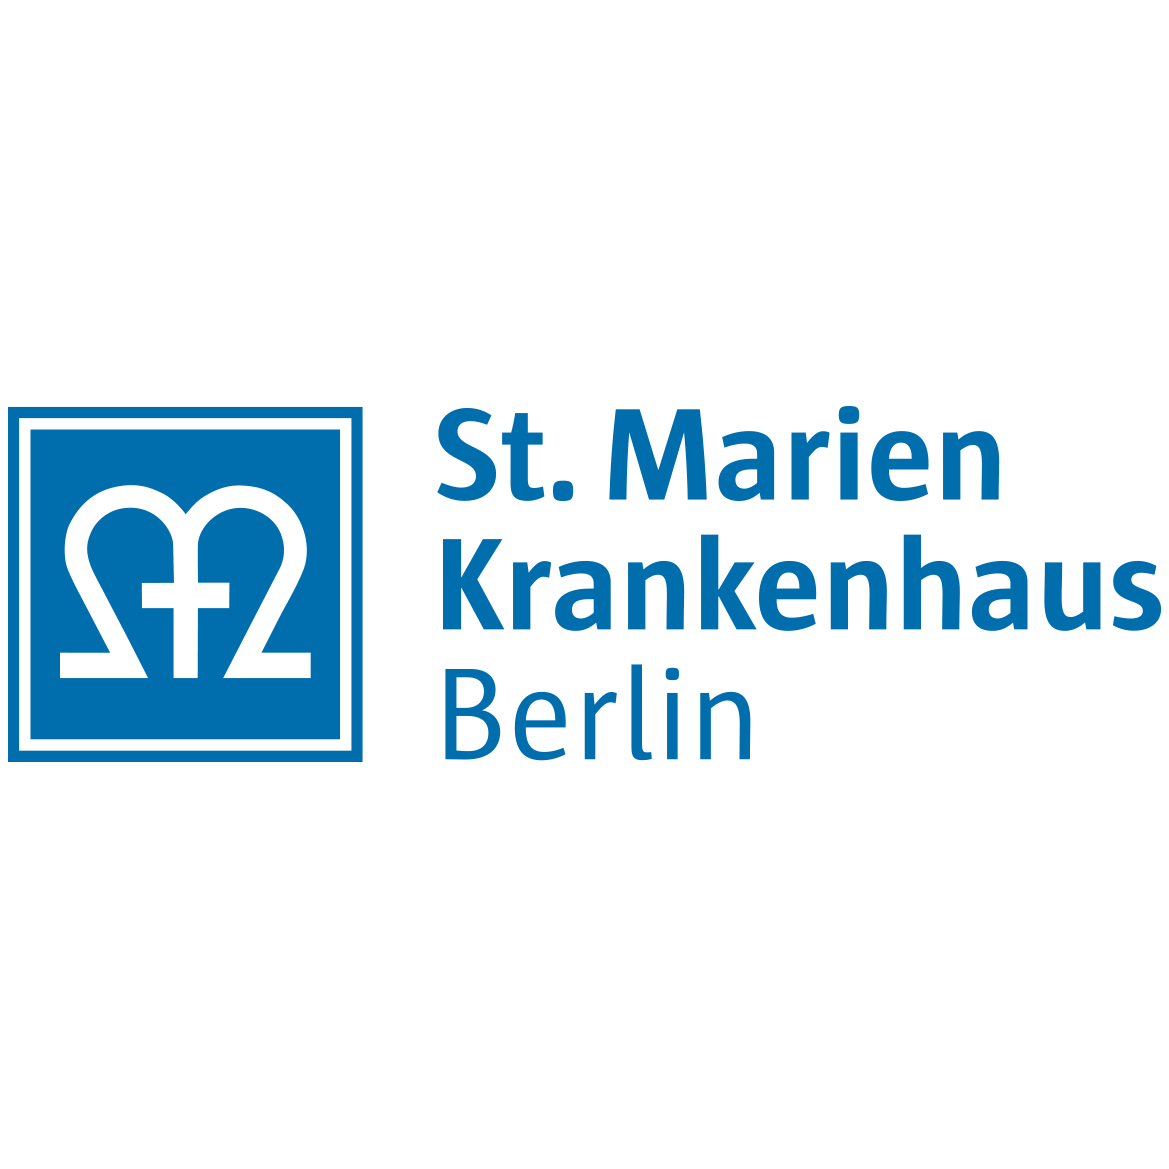 Das St. Marien-Krankenhaus Berlin ist ein Krankenhaus in Berlin Steglitz.